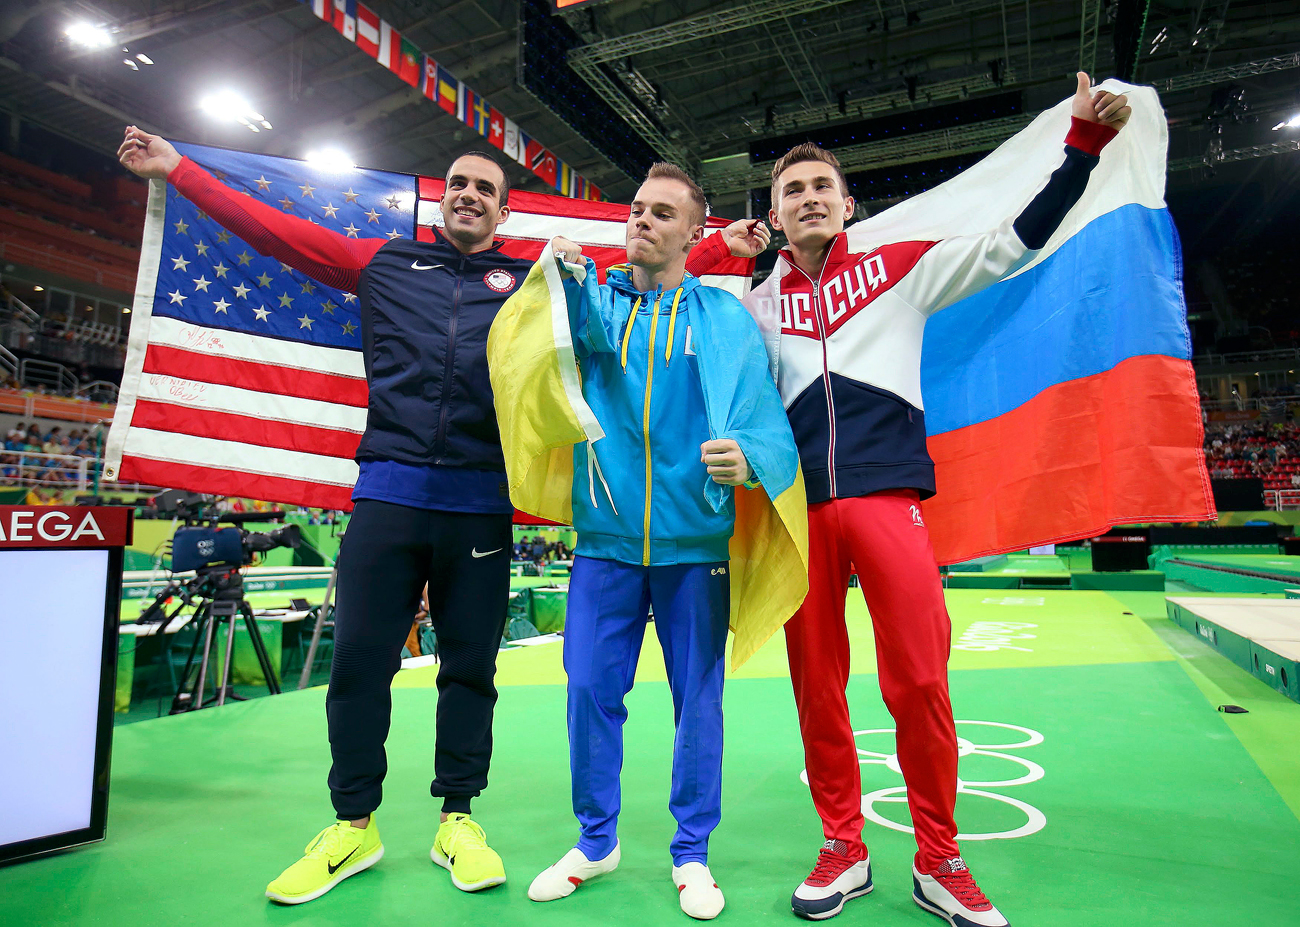 Ukrajinski športnik Oleg Vernjajev, ameriški športnik Danell Leyva ter ruski športnik David Beljavskij so se takole objeli, ko so praznovali zmago v finalu  moške paralelne bradlje na Olimpijskih igrah v Riu.